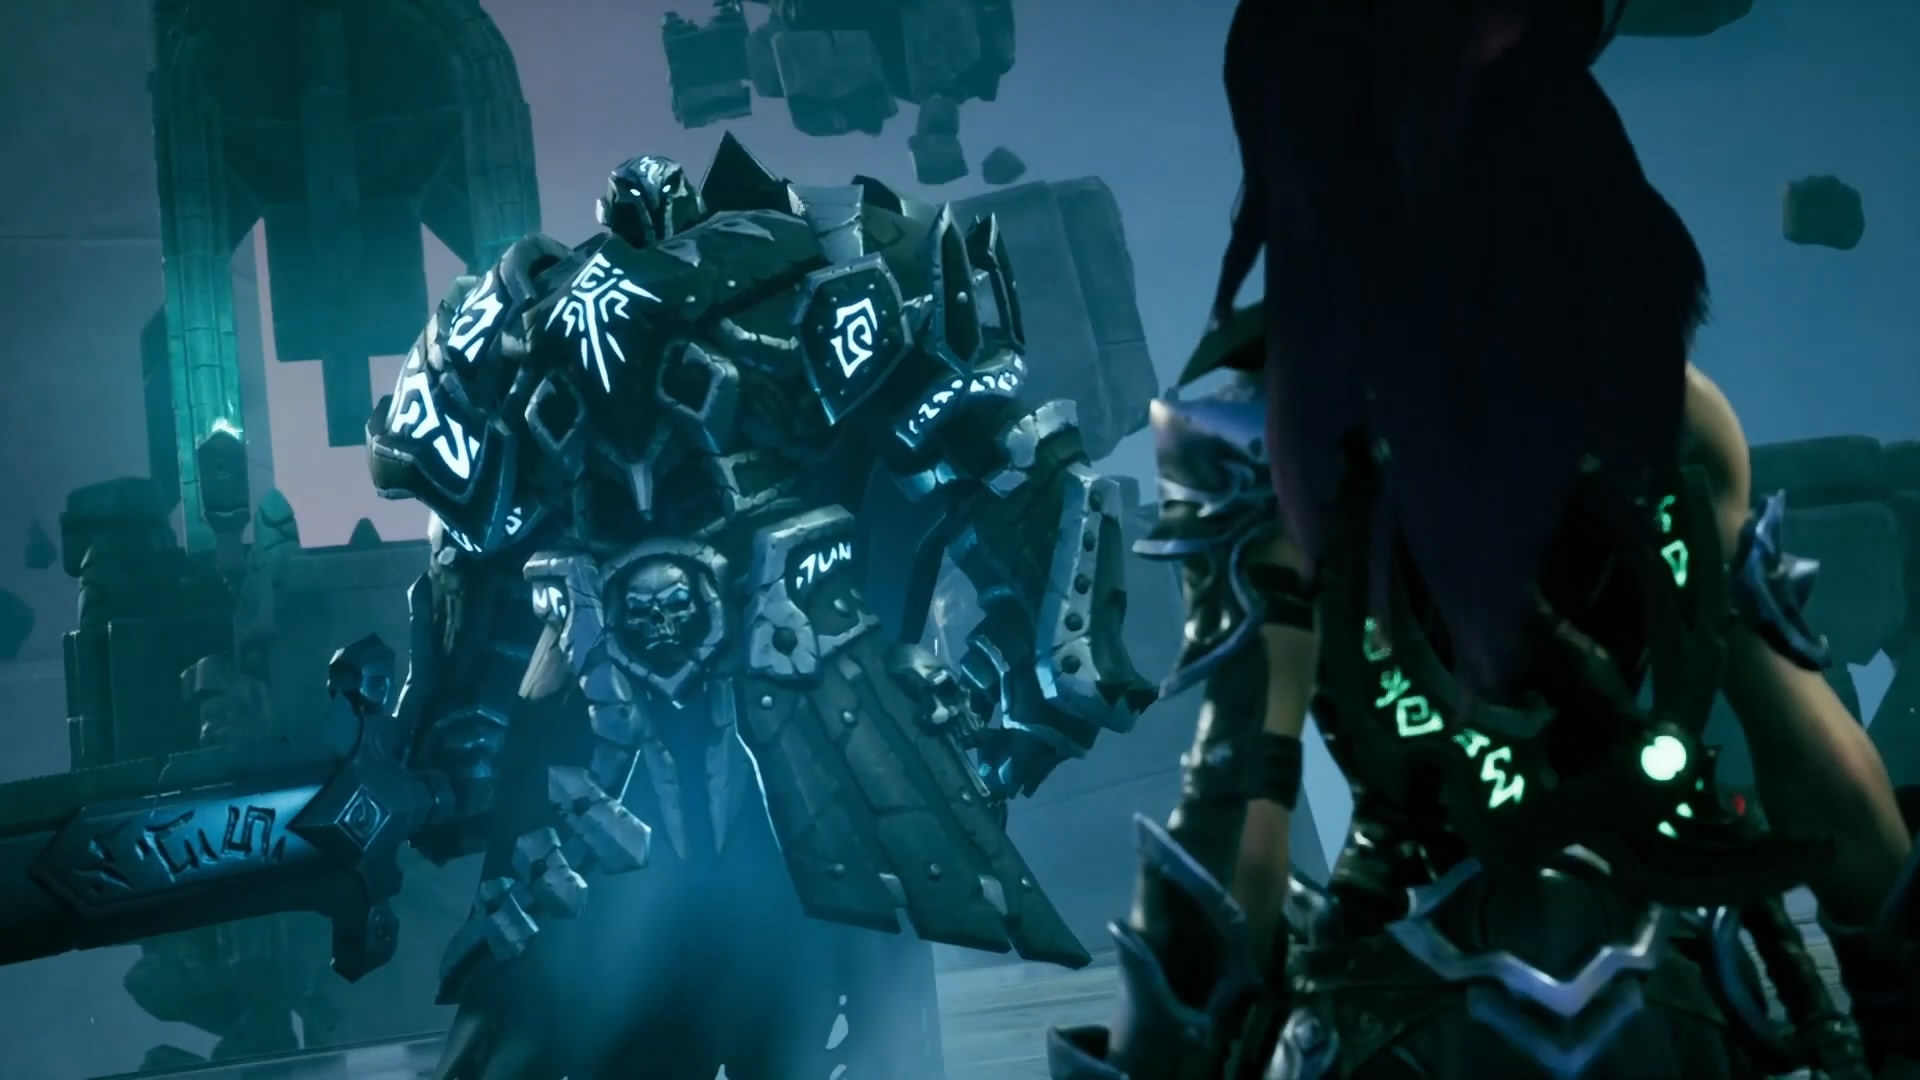 《暗黑血统3》首个DLC“试炼”发布 疯狂挑战获丰厚奖励